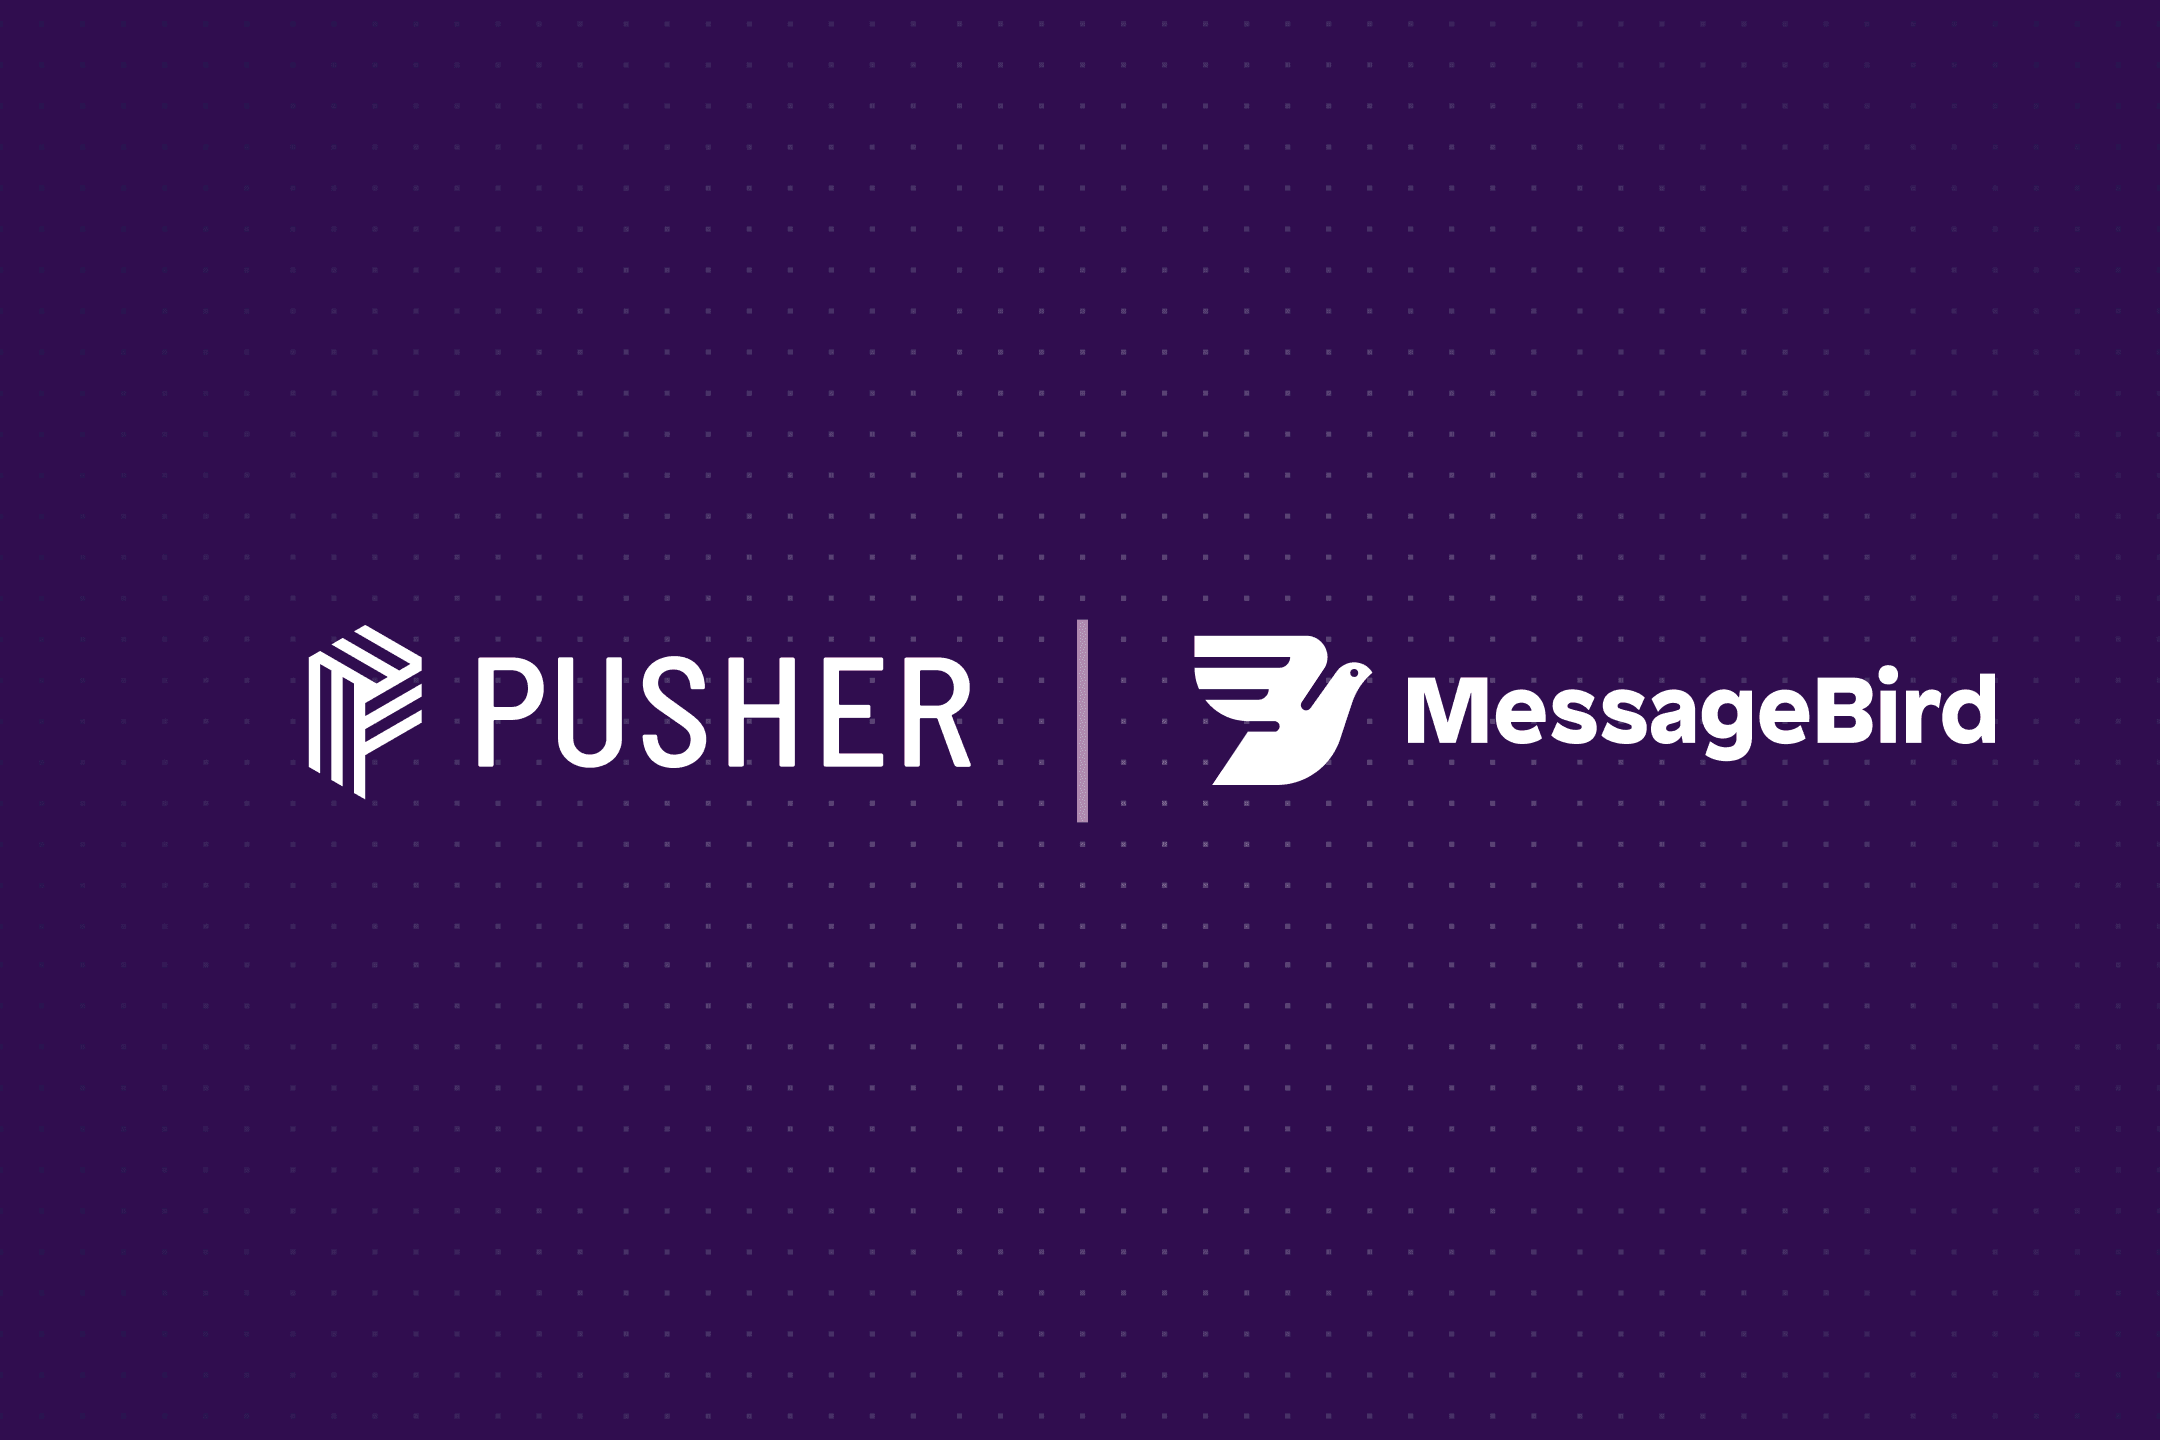 Pusher-MB-blog-image.png